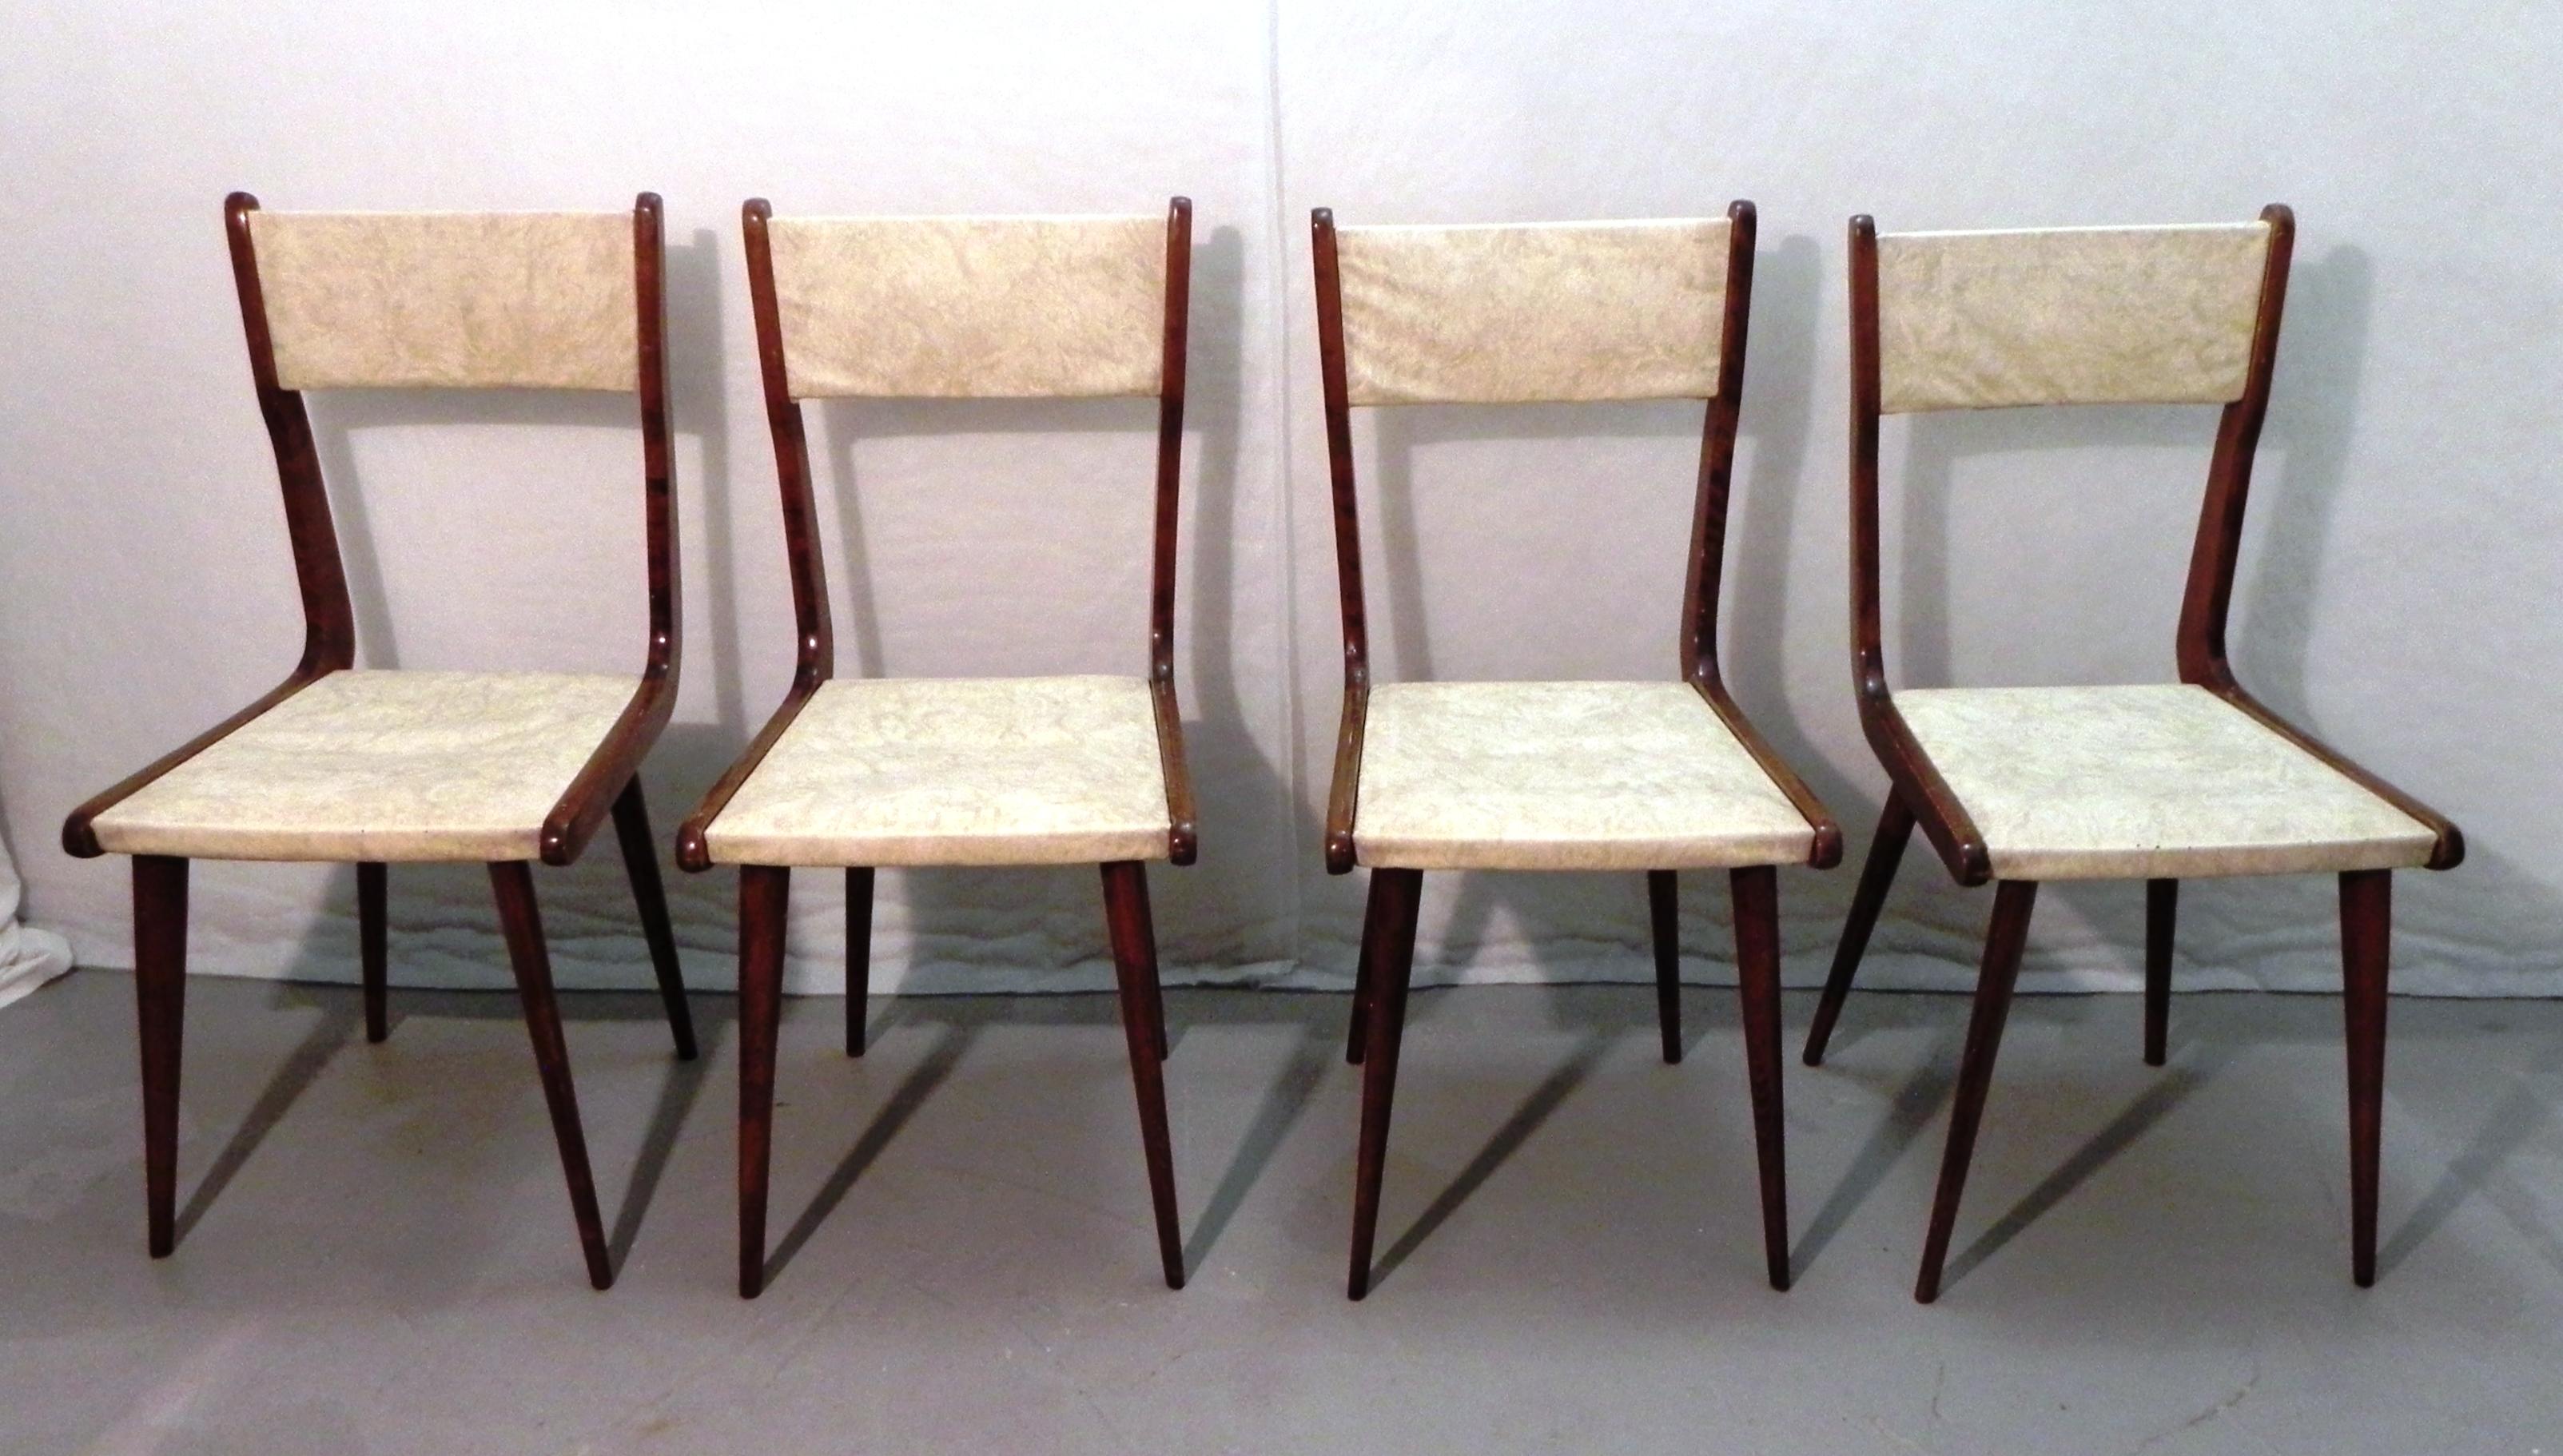 

4 chaises modernes du milieu du siècle dans le style Carlo Ratti des années 1960. Fût en bois, revêtement en skaï. Les chaises présentent des signes de xylophages, un traitement spécifique a été effectué. La sellerie est en bon état, de même que